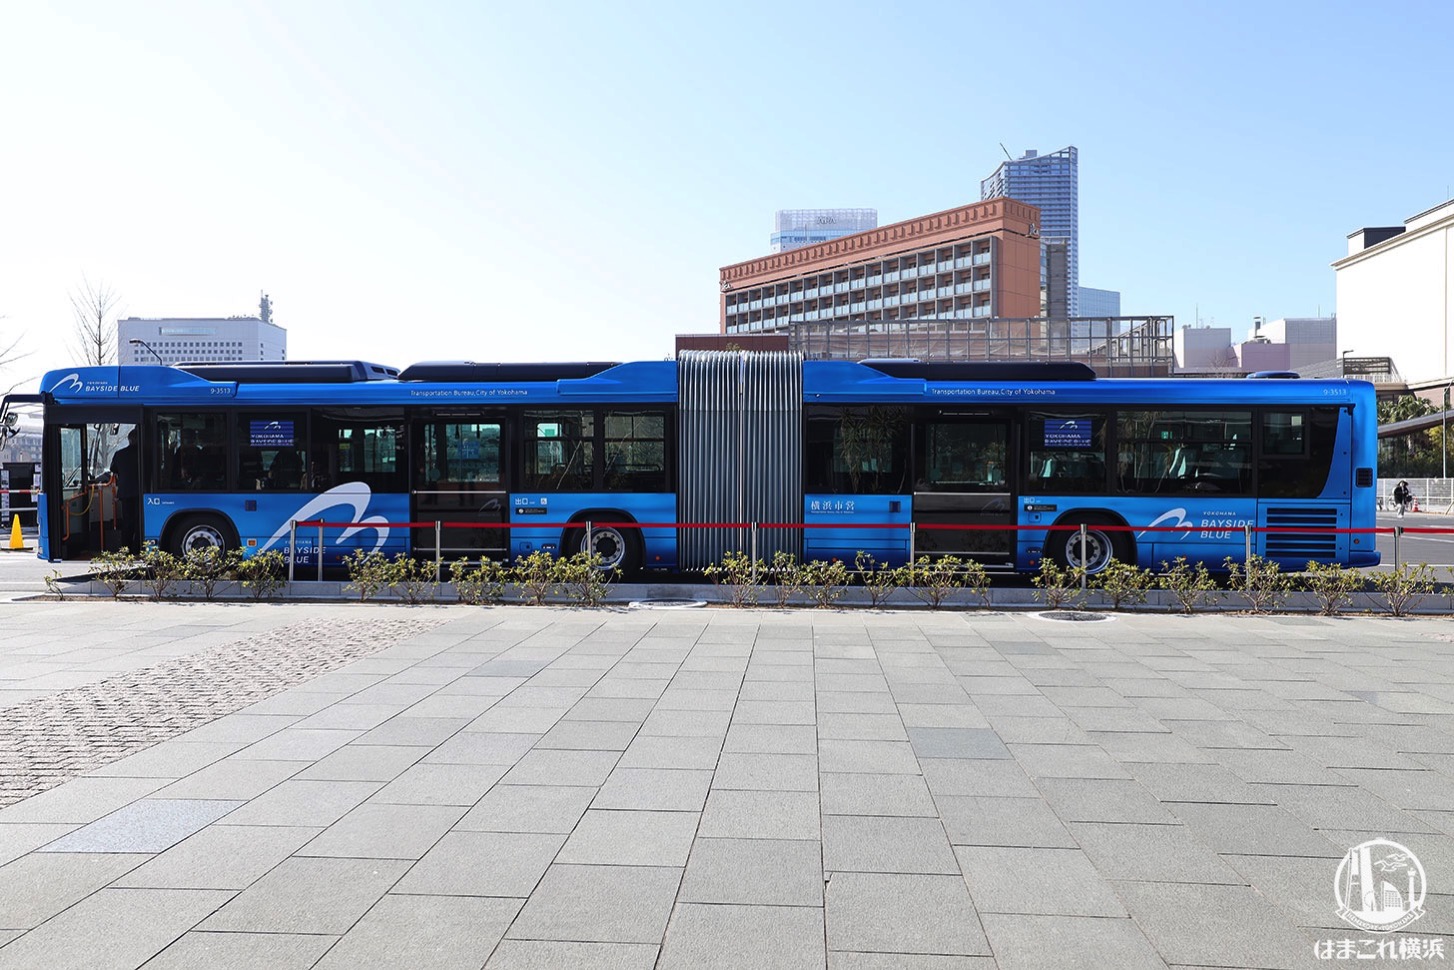 横浜の連節バス「ベイサイドブルー」が運行開始、ルートや運賃 あかいくつ等は再編 | はまこれ横浜